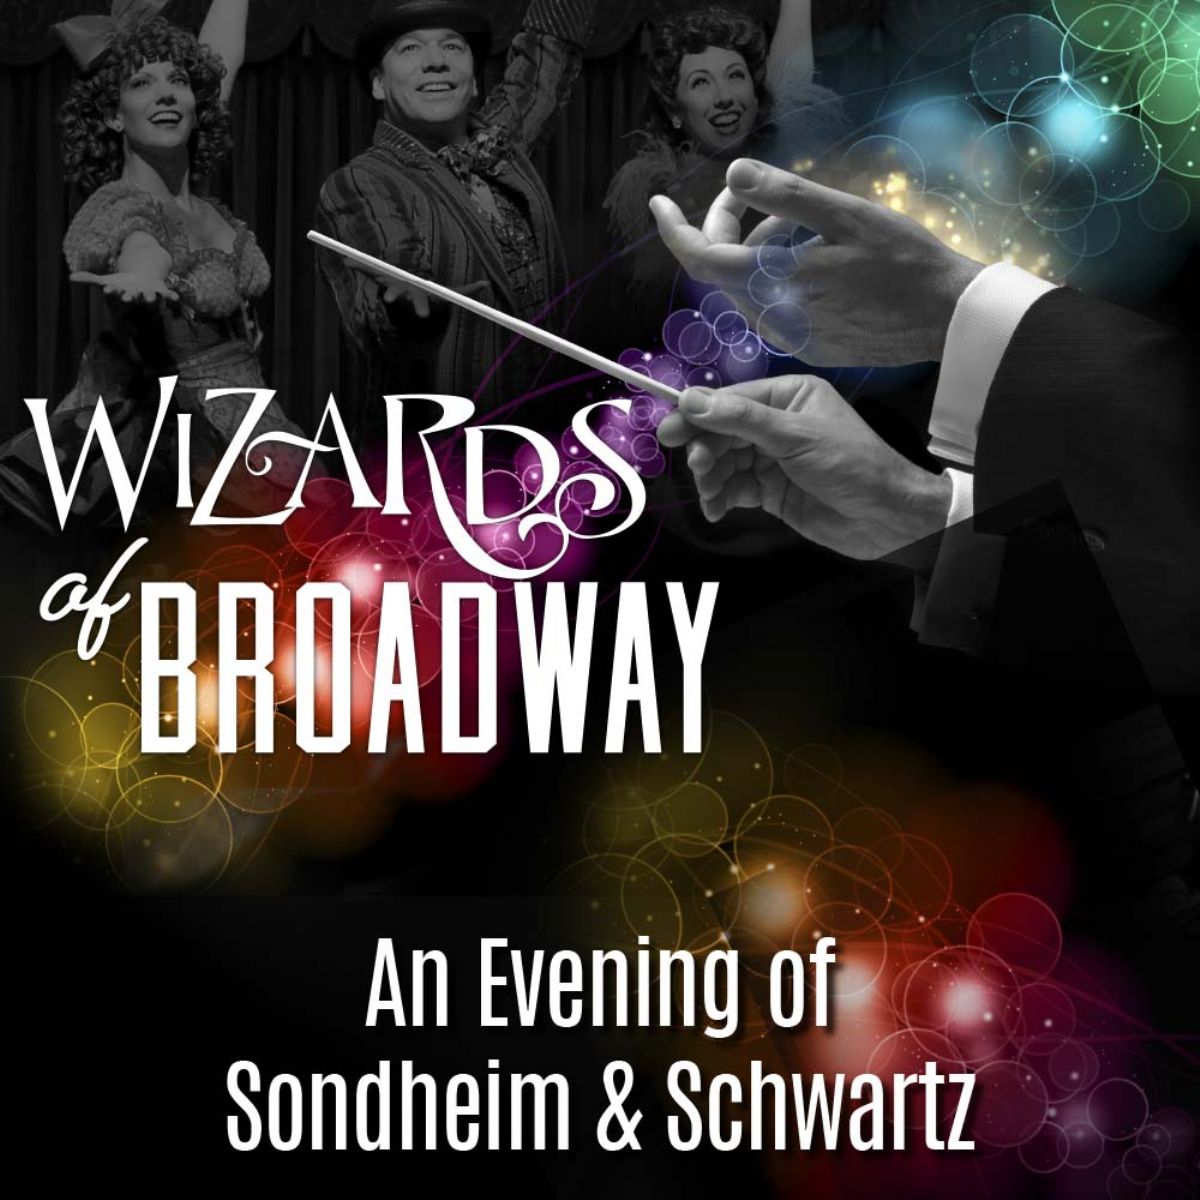 Wizards of Broadway - An Evening with Sondheim & Schwartz